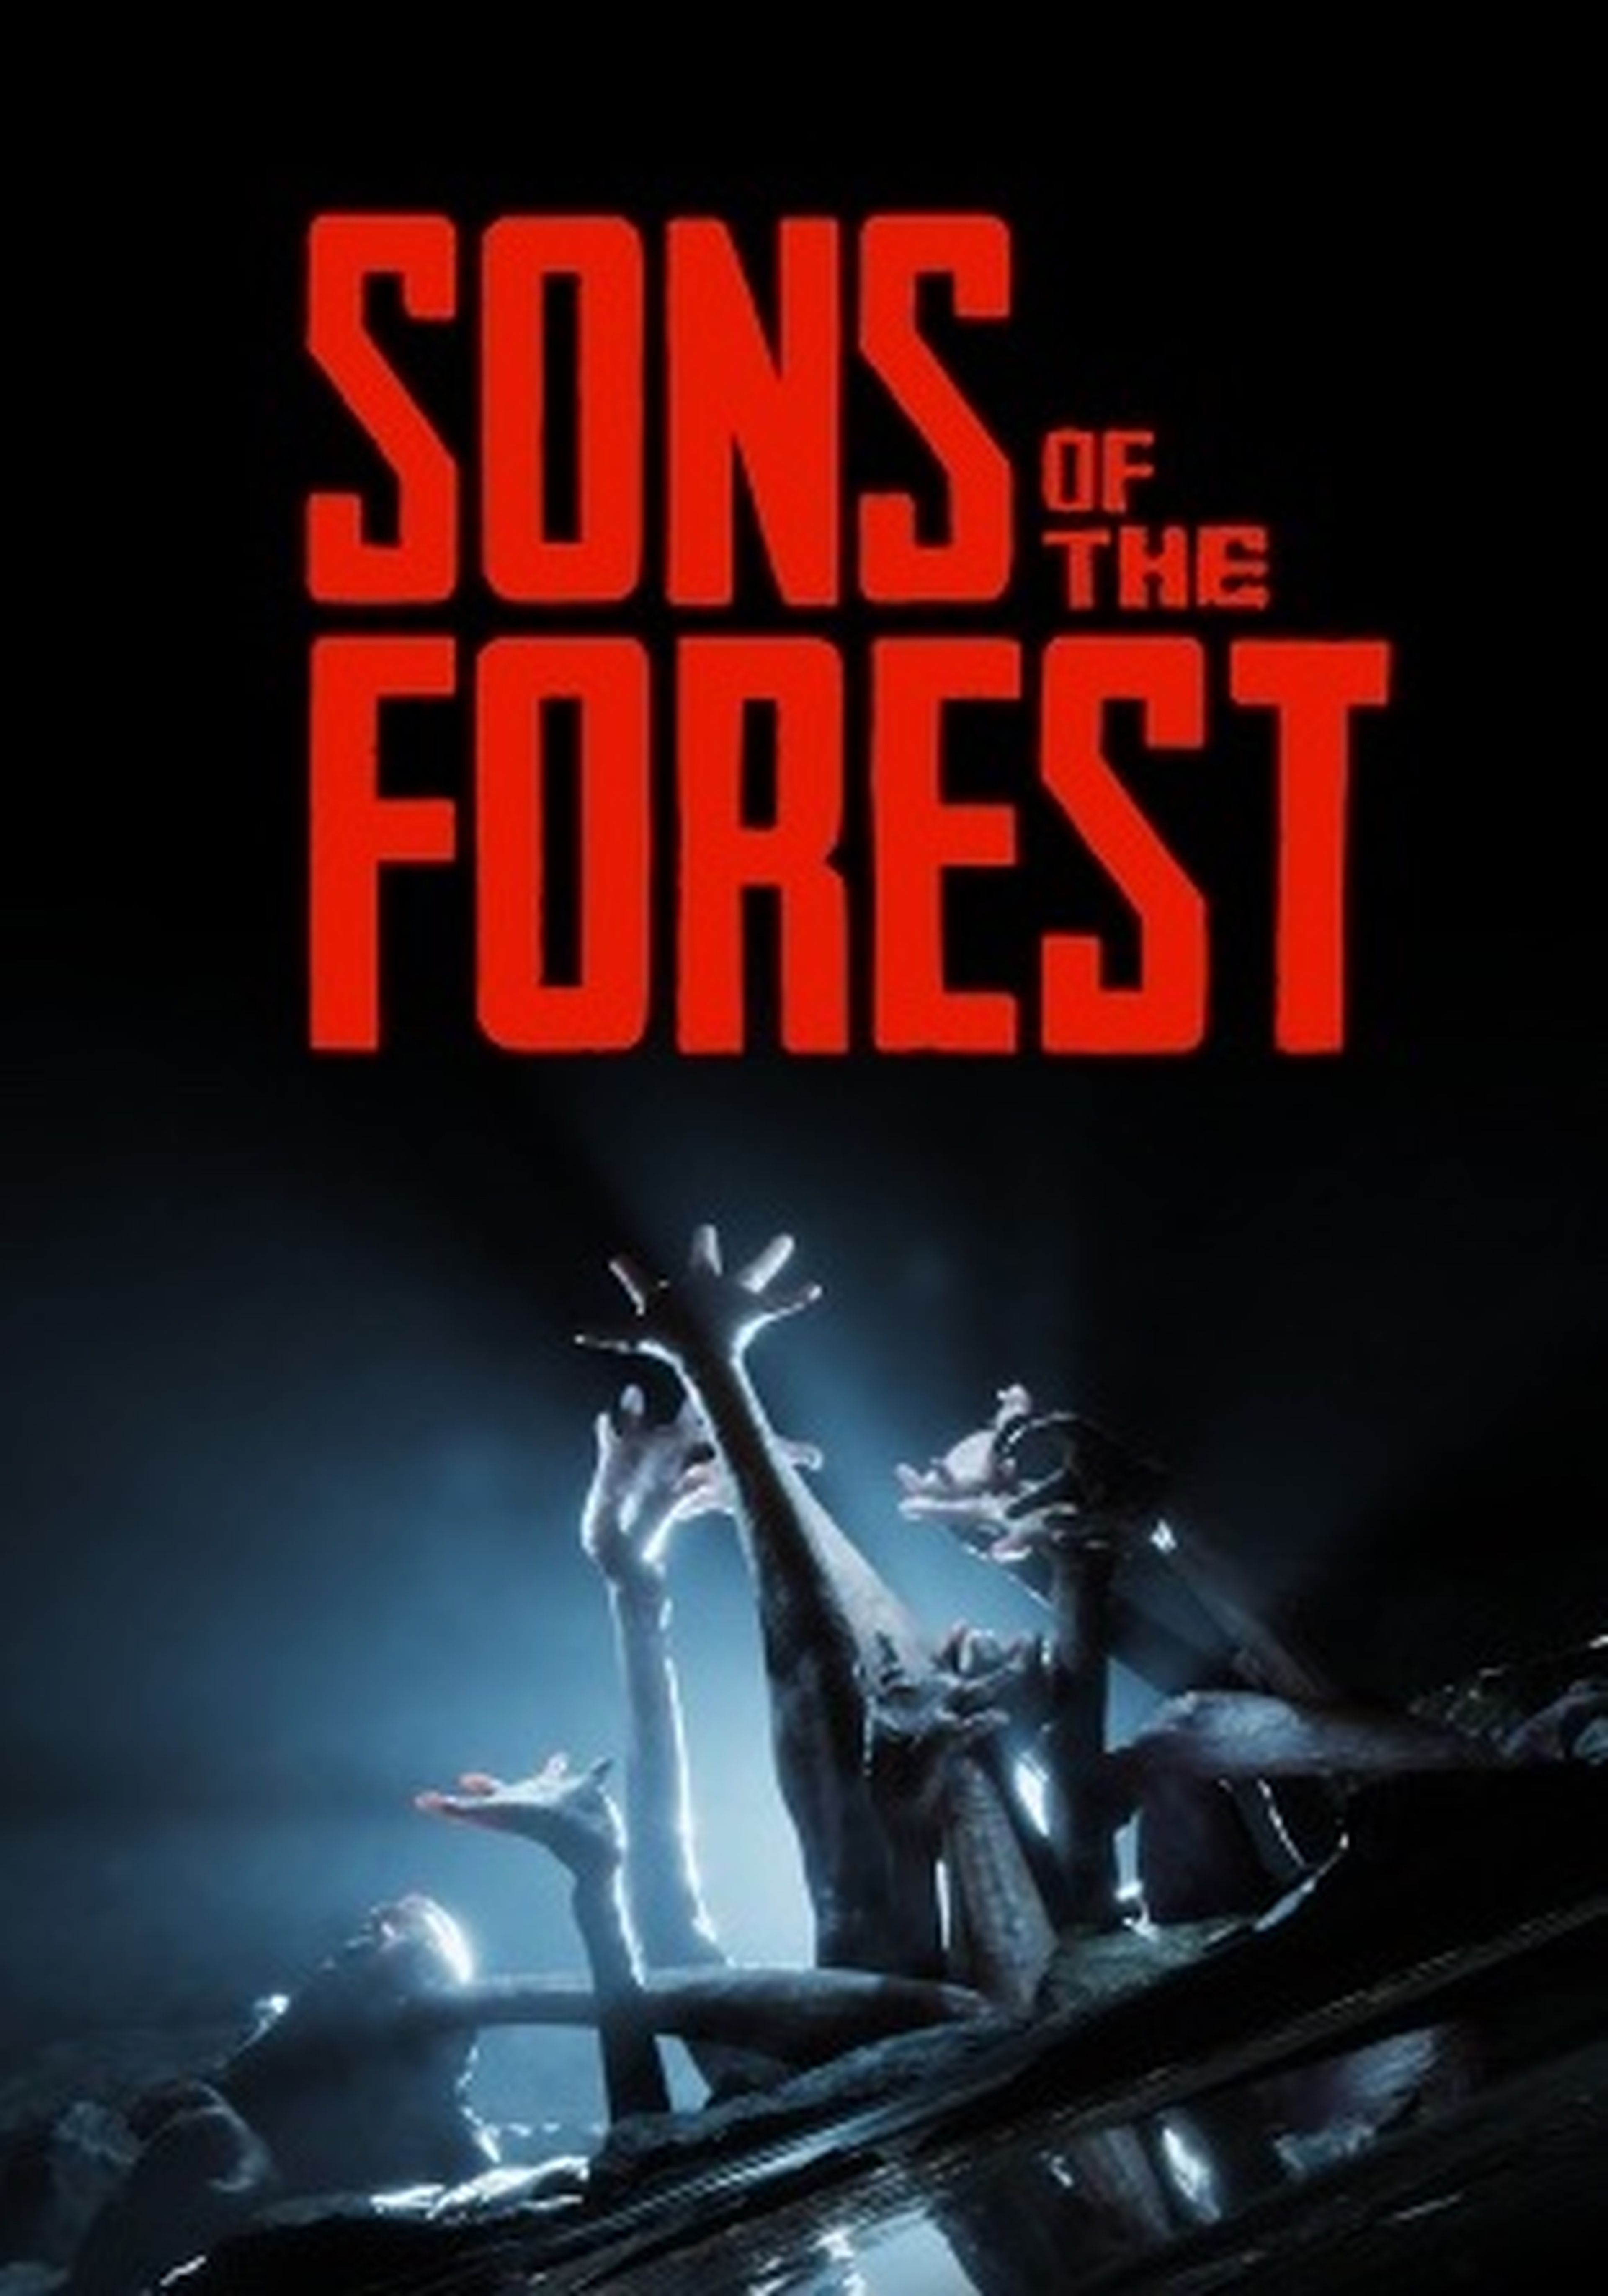 Cuál es el precio de Sons of the Forest, el juego más esperado en